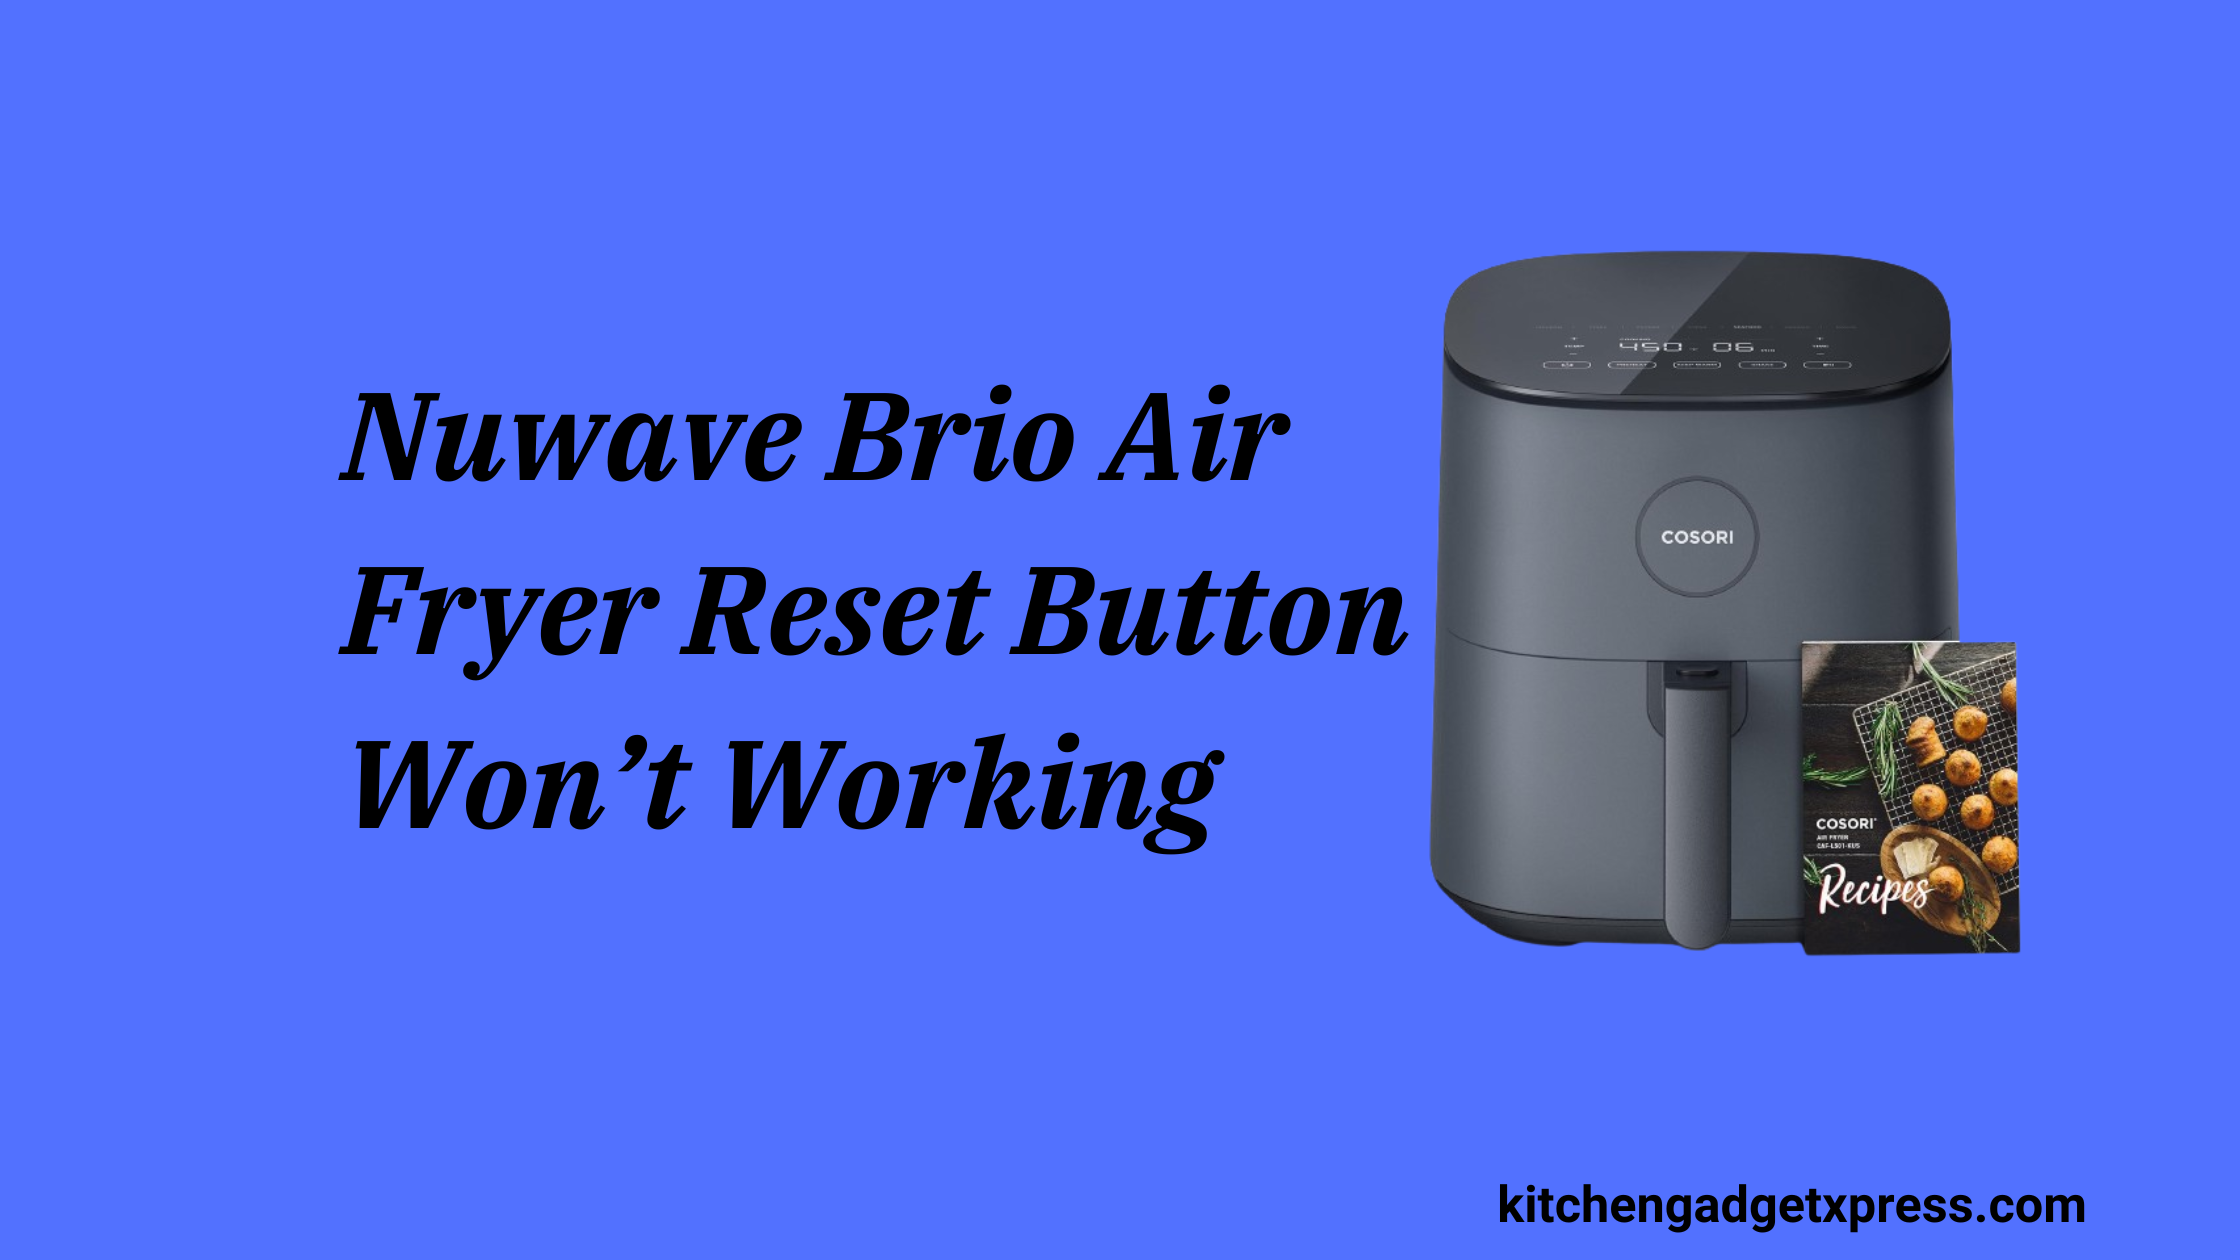 Nuwave Brio Air Fryer Reset Button Won’t Working